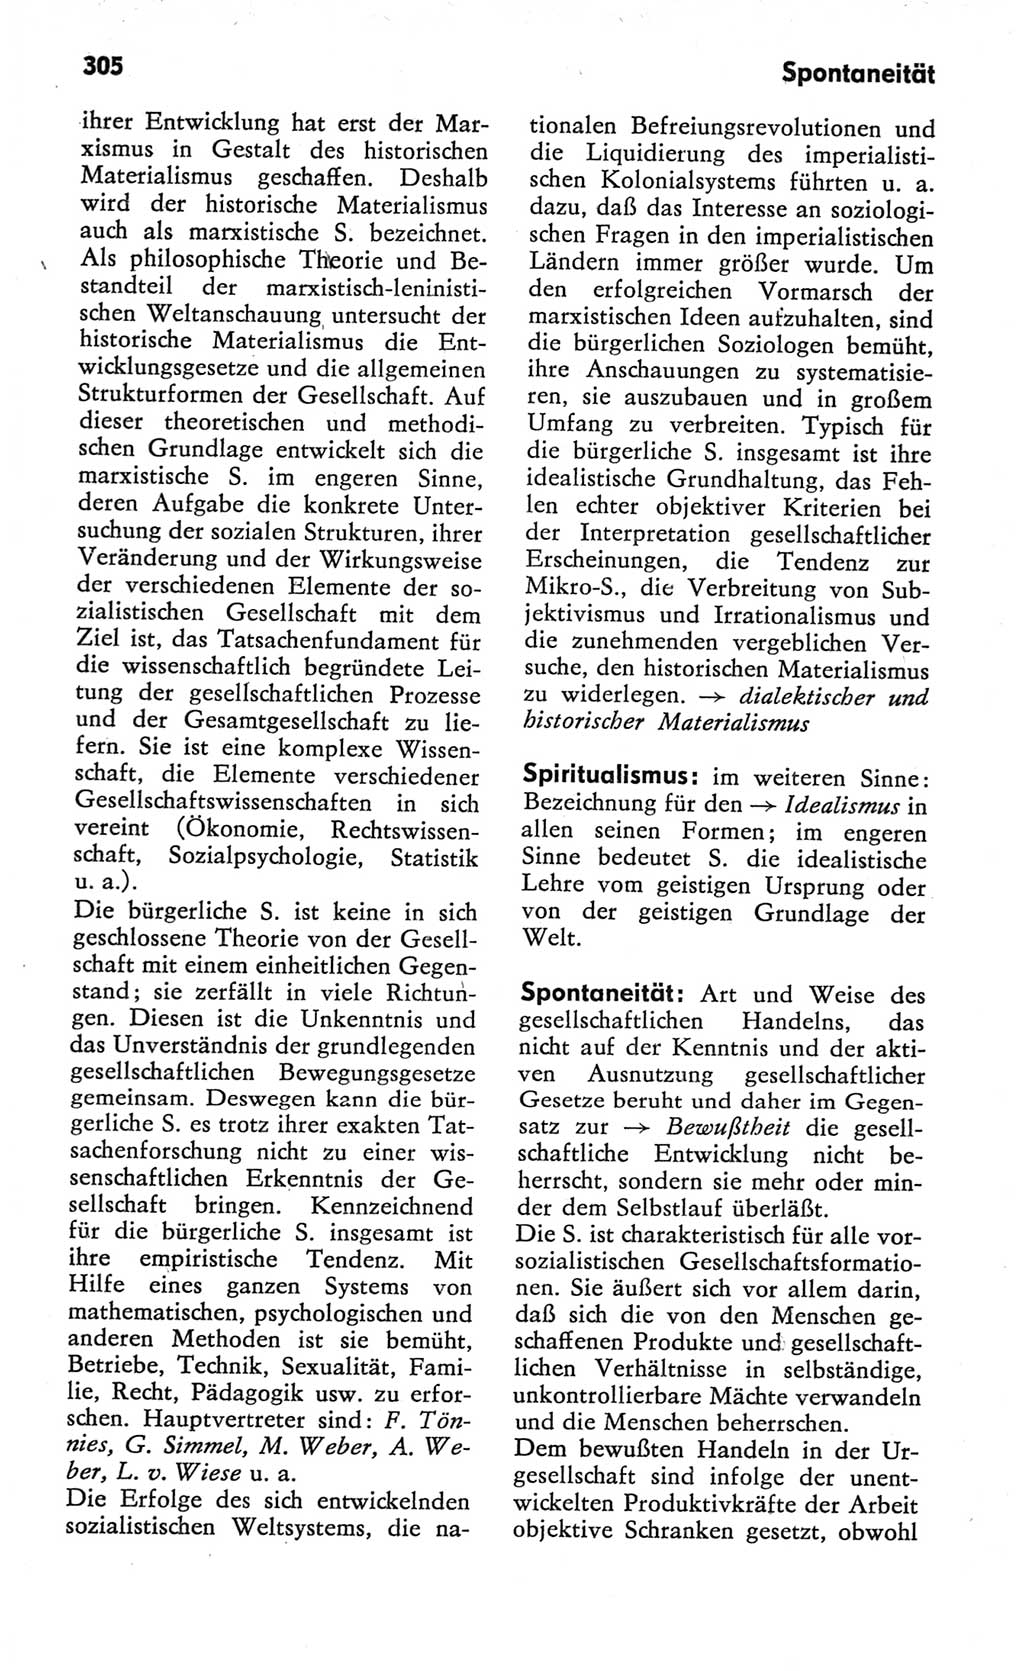 Kleines Wörterbuch der marxistisch-leninistischen Philosophie [Deutsche Demokratische Republik (DDR)] 1982, Seite 305 (Kl. Wb. ML Phil. DDR 1982, S. 305)